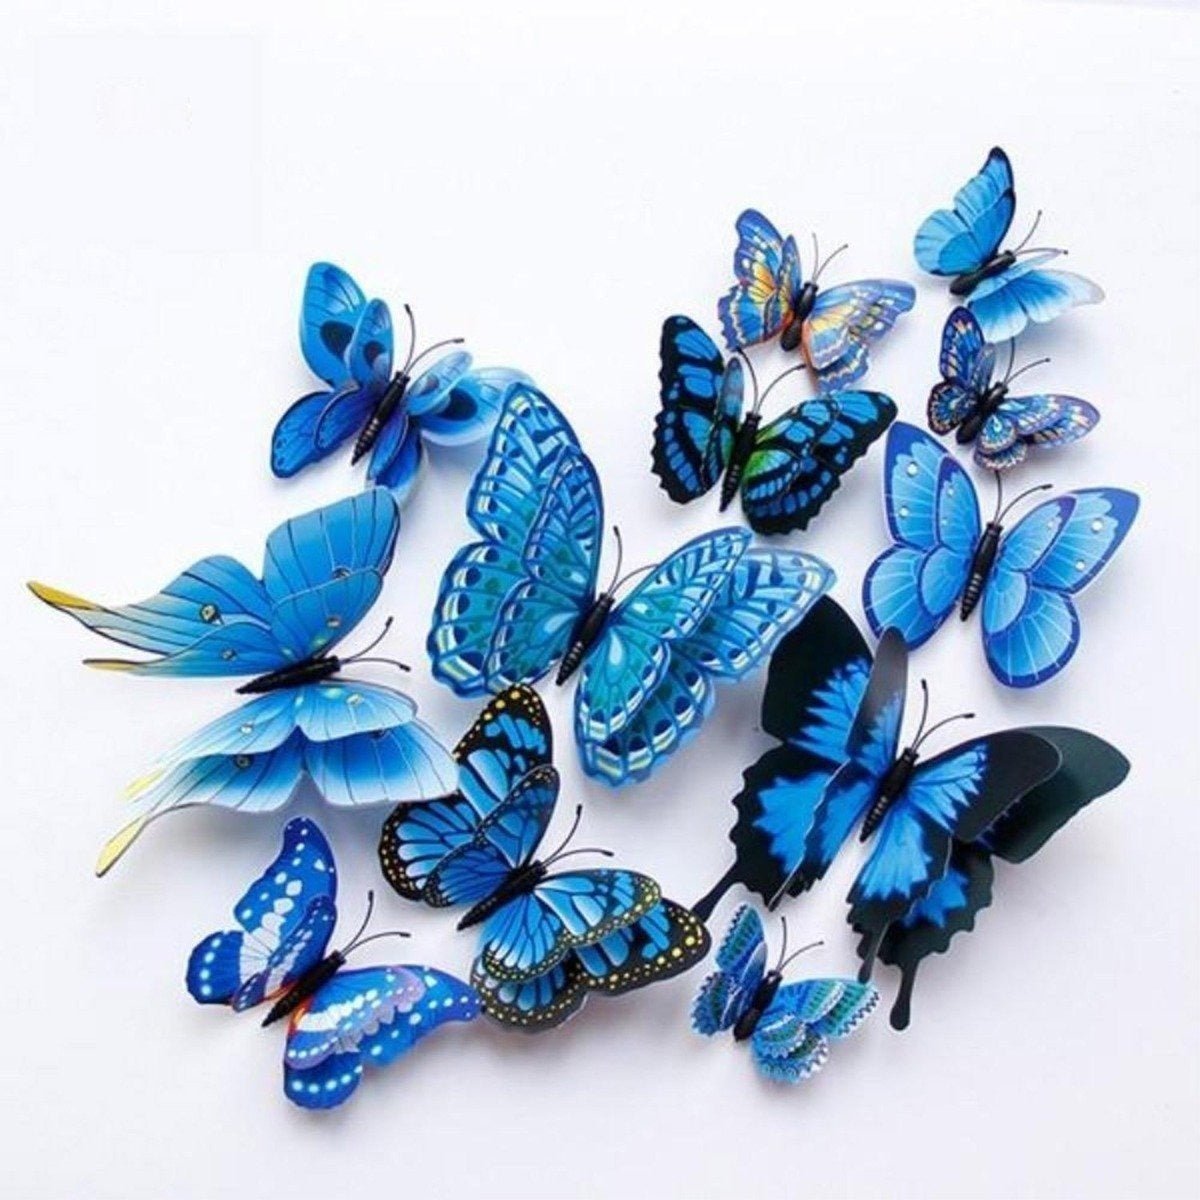 12x Double Layer 3D Butterfly Wall Sticker Home Decor Butterflies Fridge Magnet - Blue - - Asia Sell